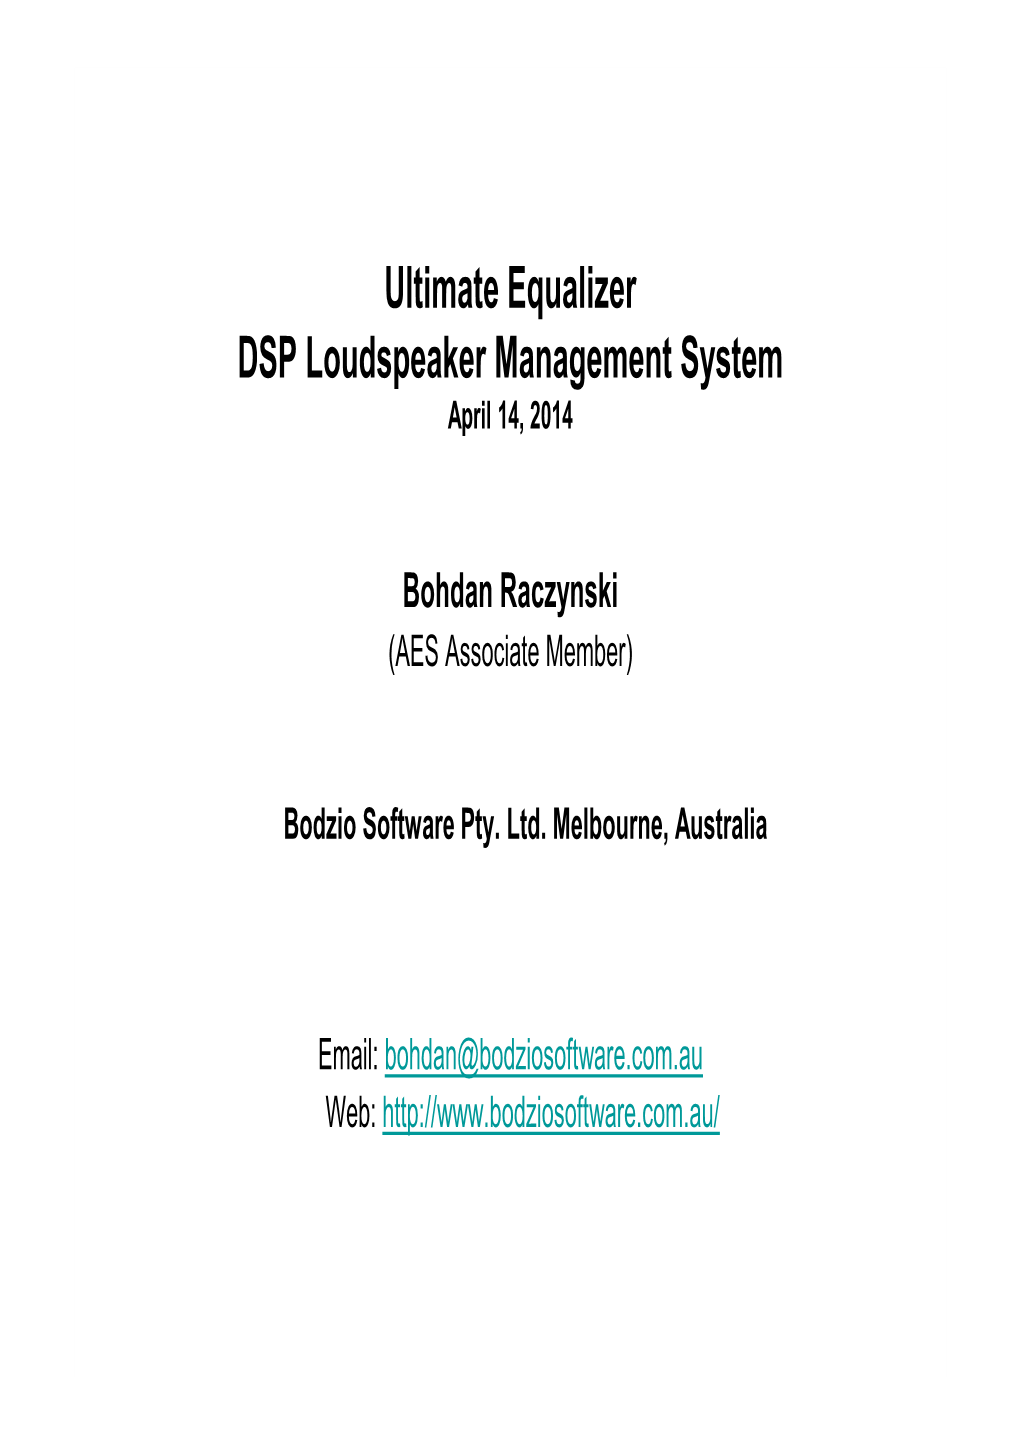 Ultimate Equalizer DSP Loudspeaker Management System April 14, 2014